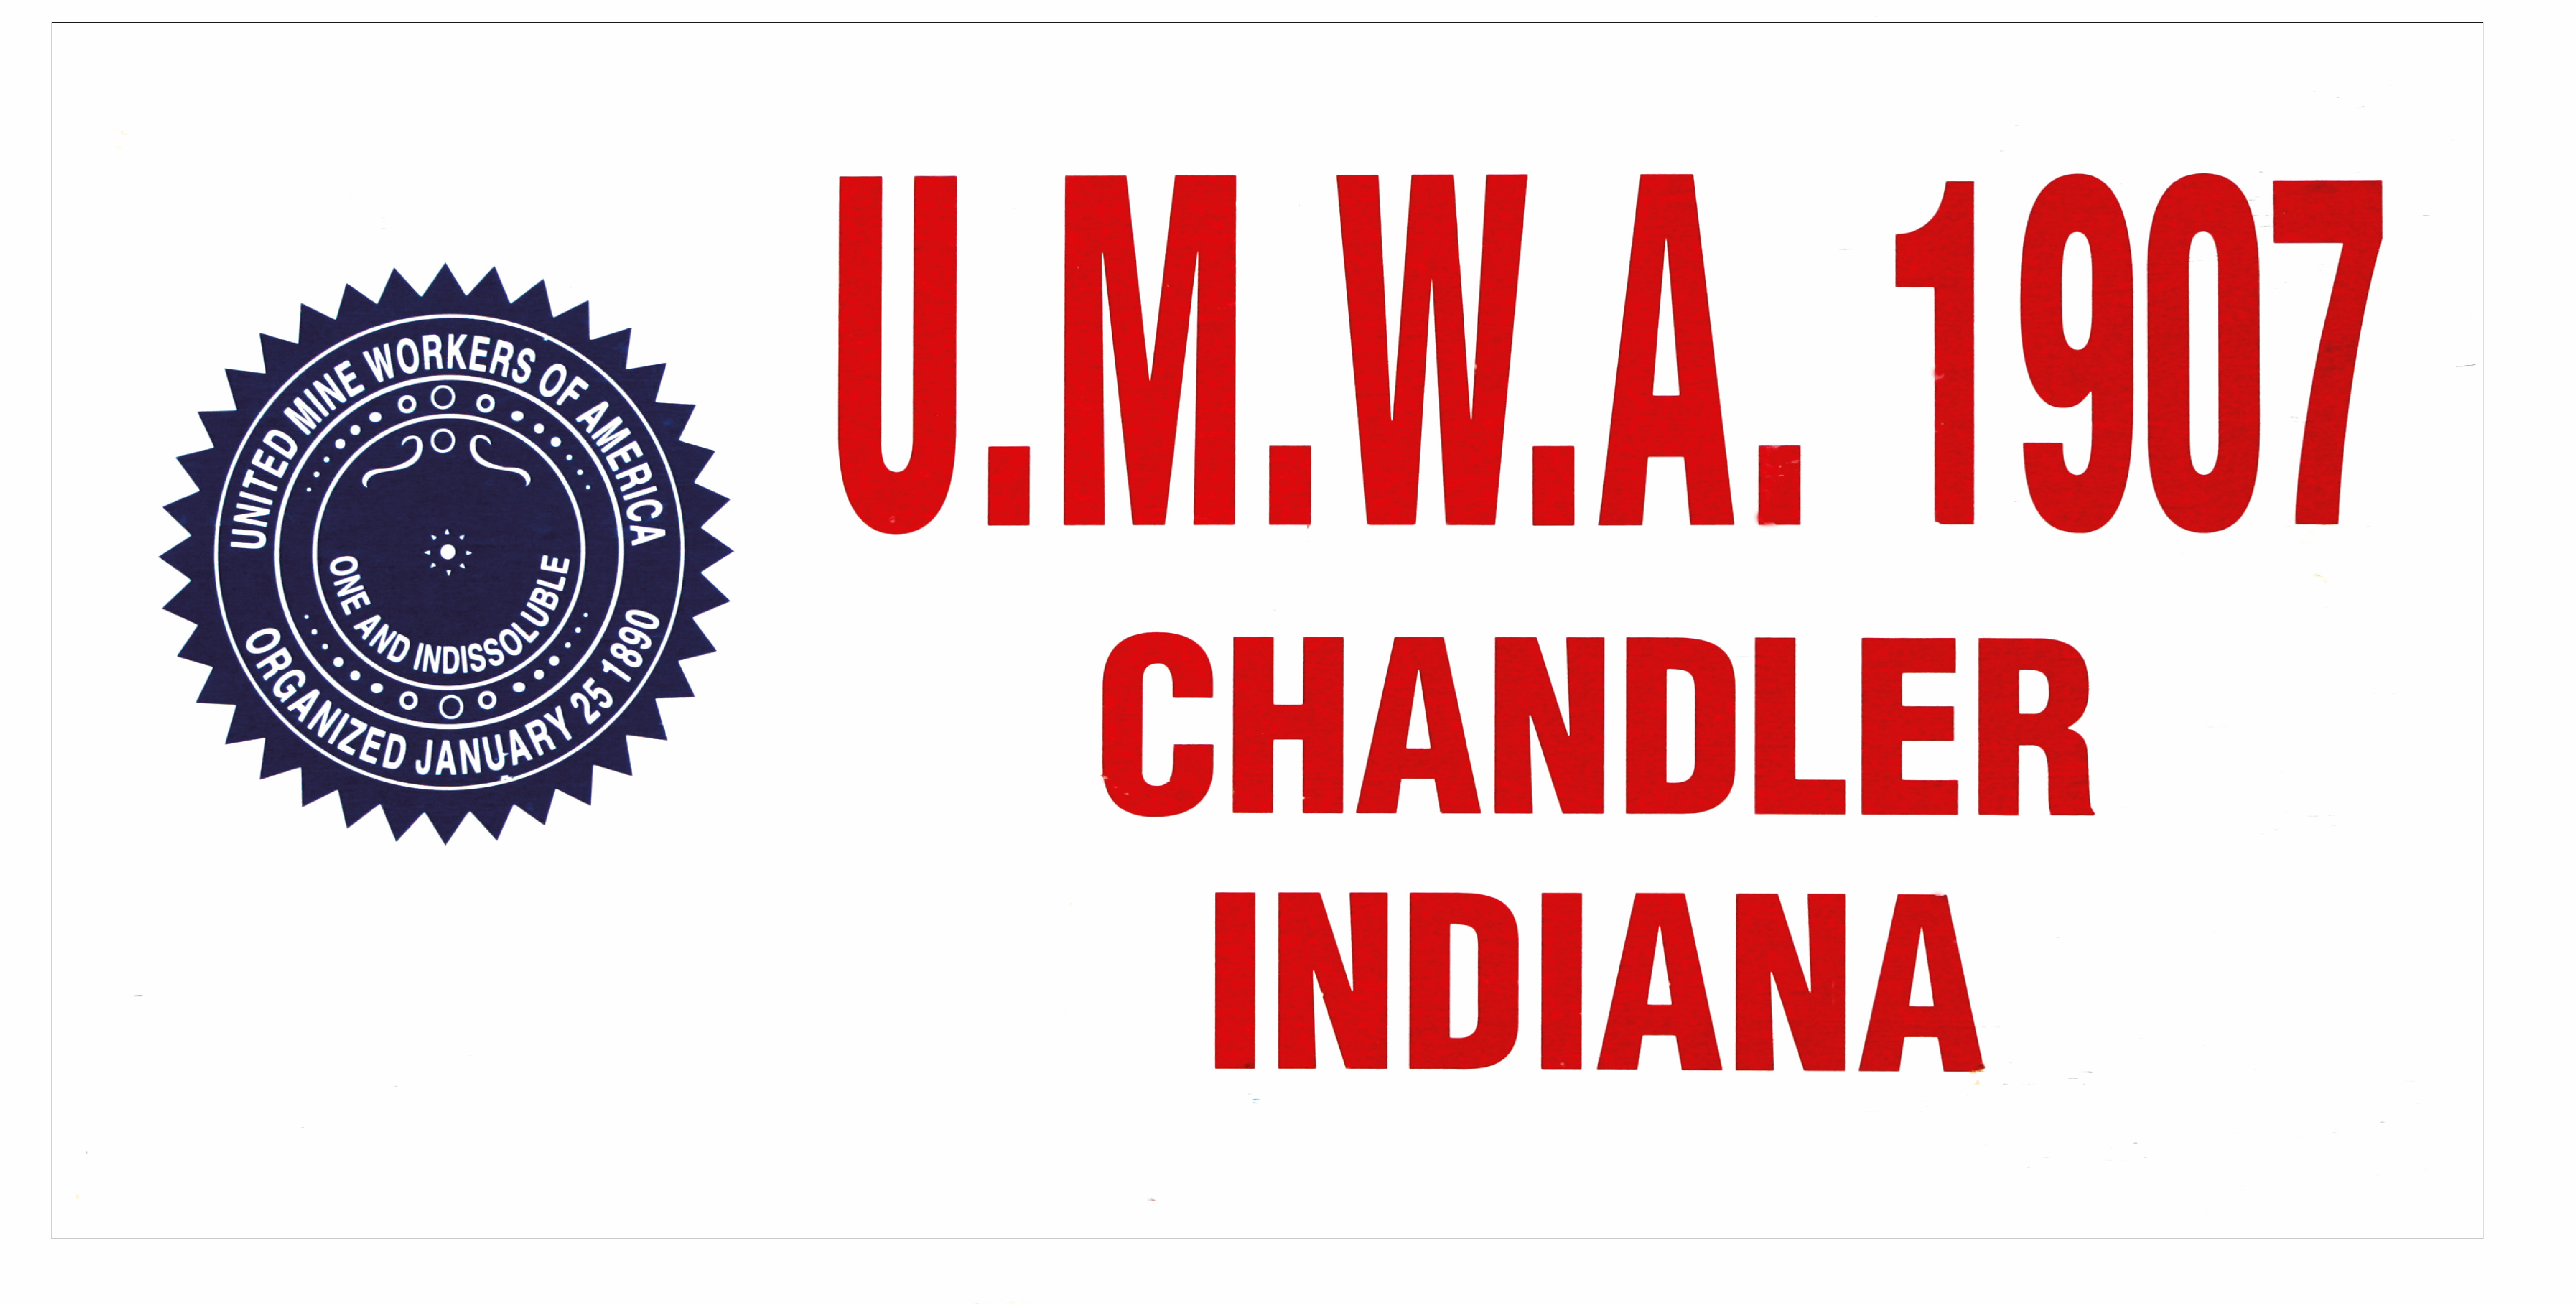 UMWA-1907